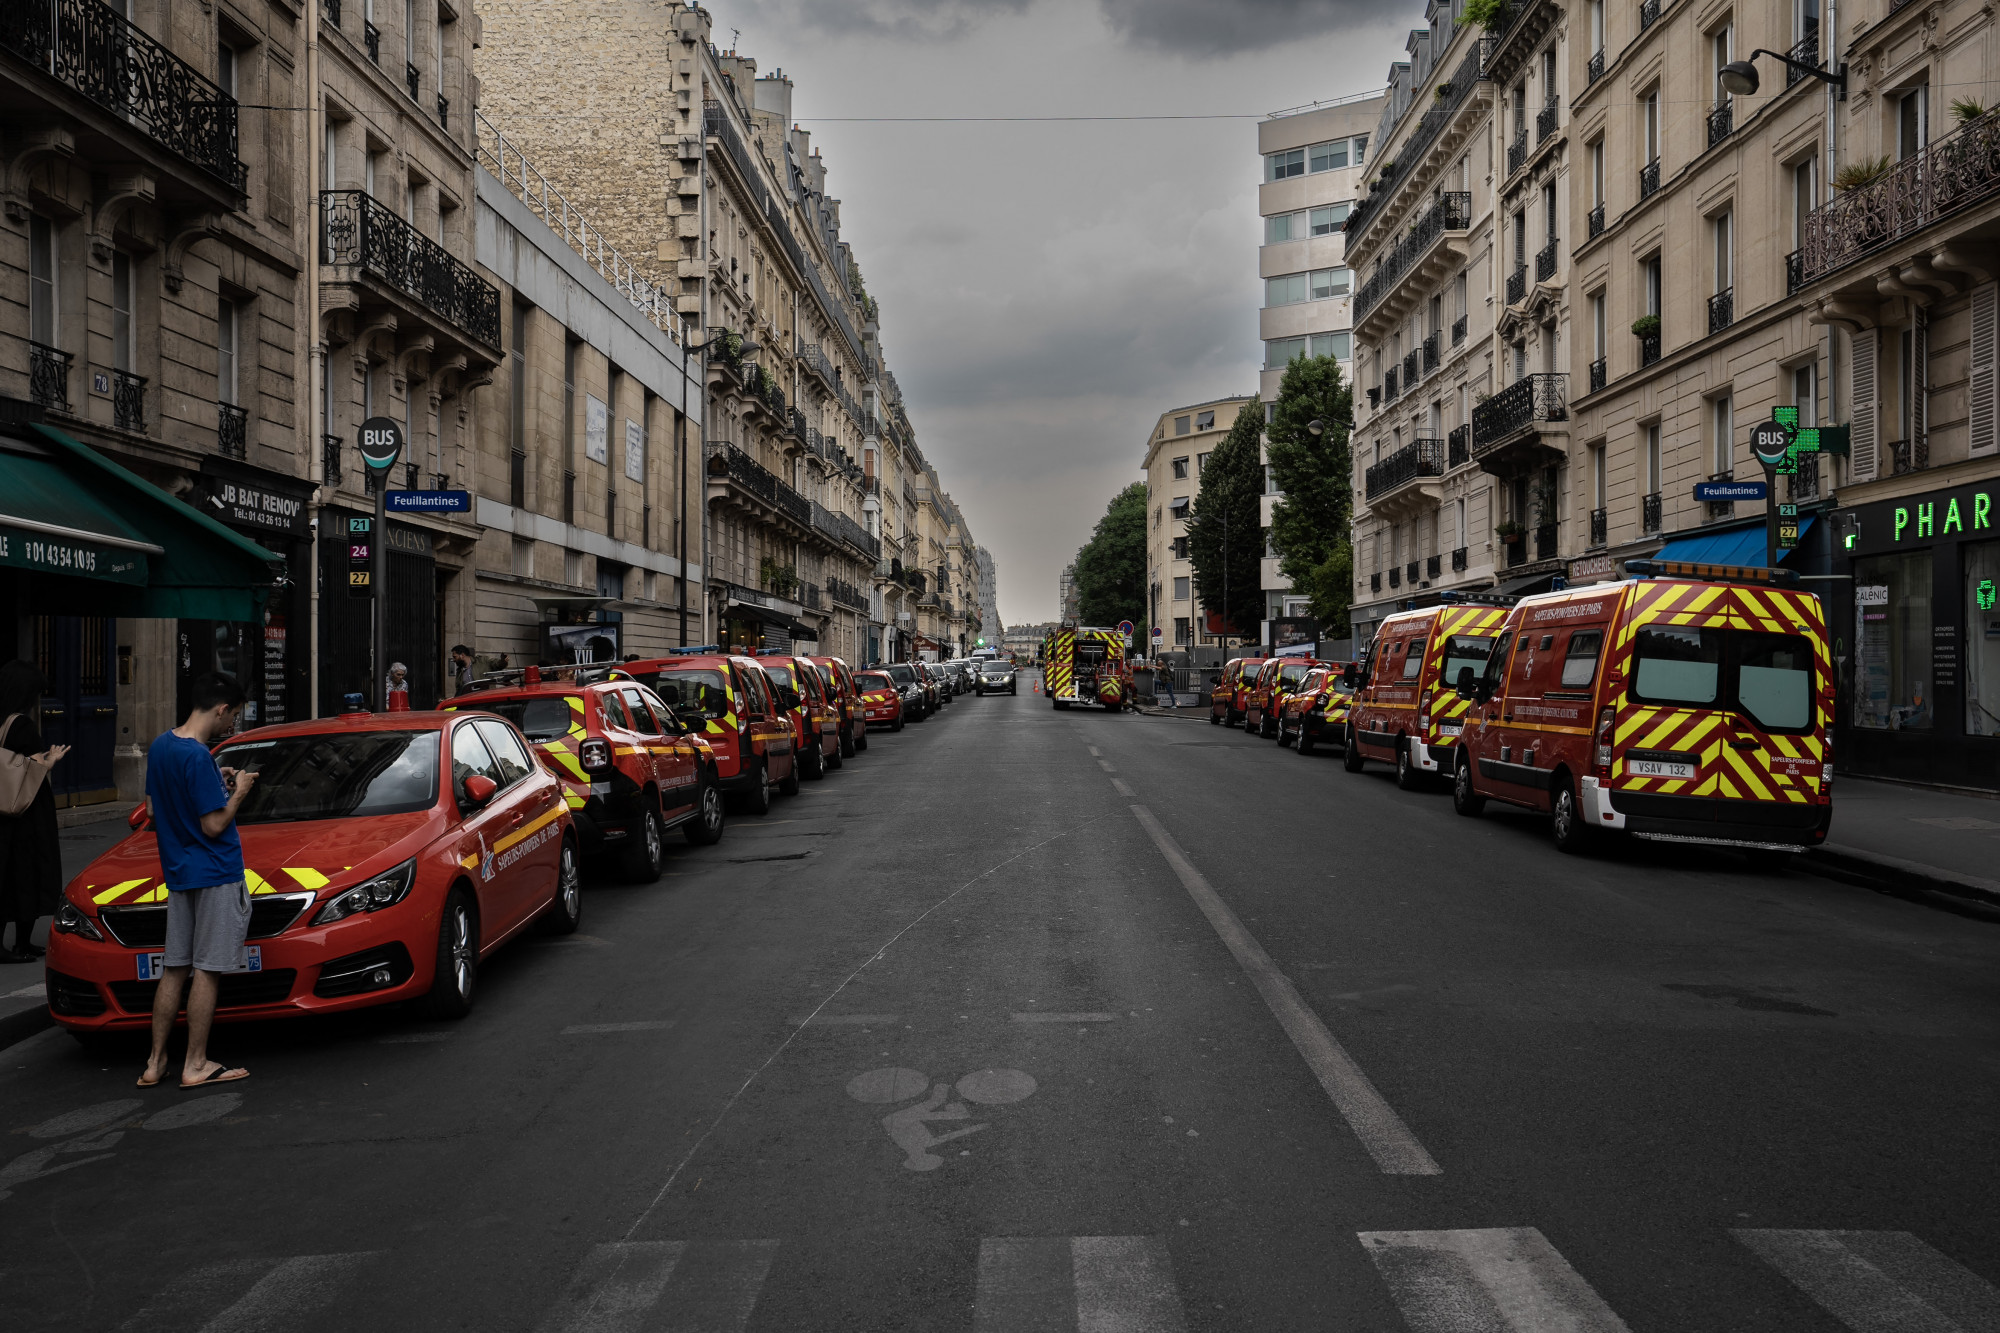 Gázrobbanás Párizsban: legalább 37 ember megsérült, többen válságos állapotban vannak